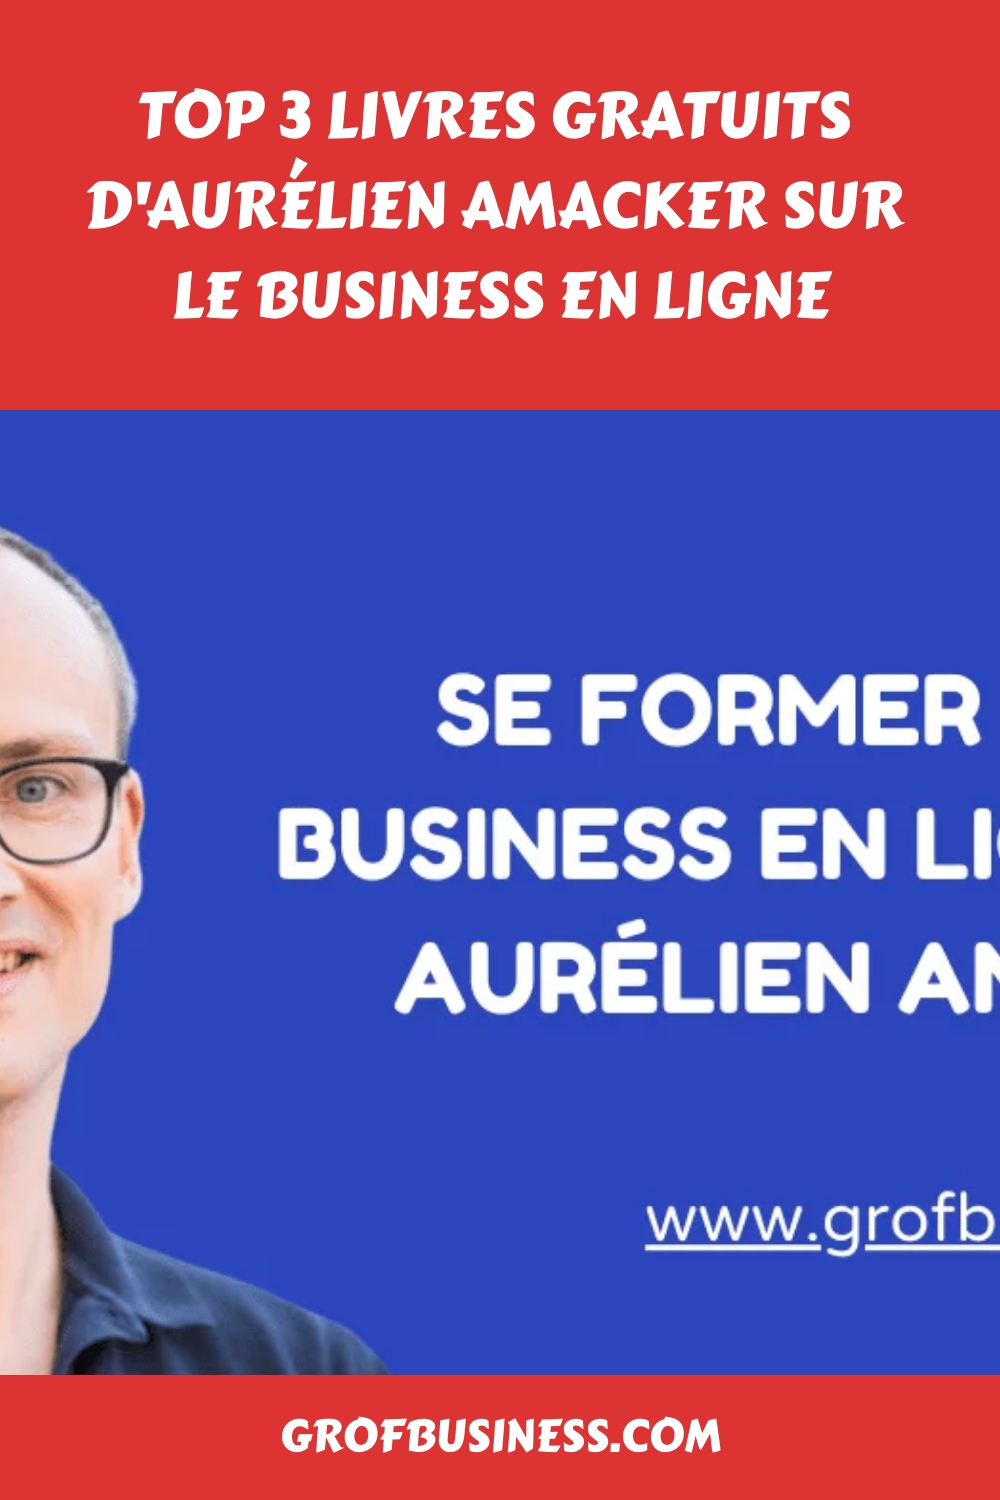 Top 3 livres gratuits d'Aurélien Amacker sur le business en ligne